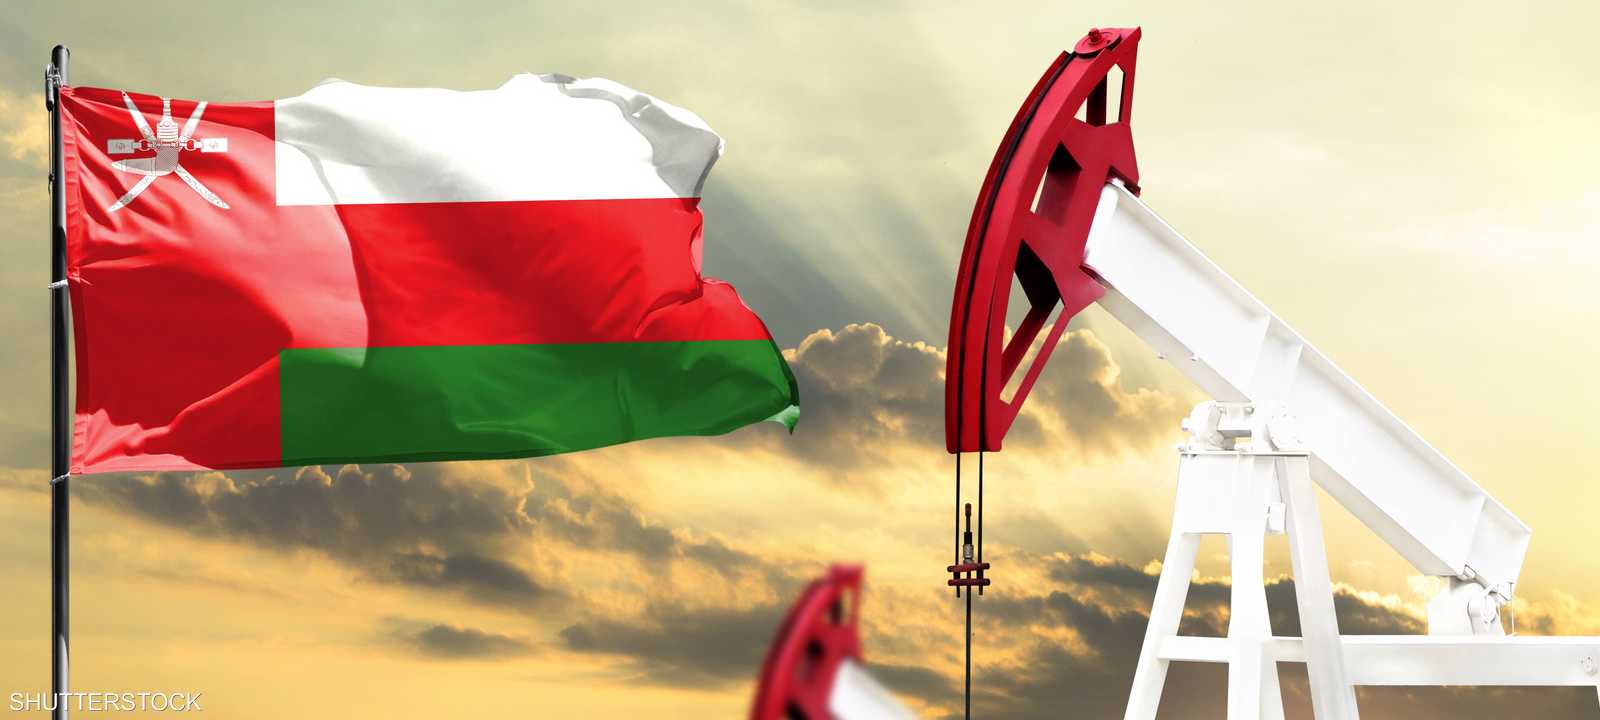 سلطنة عمان تعزز جهود تنمية قطاع الطاقة